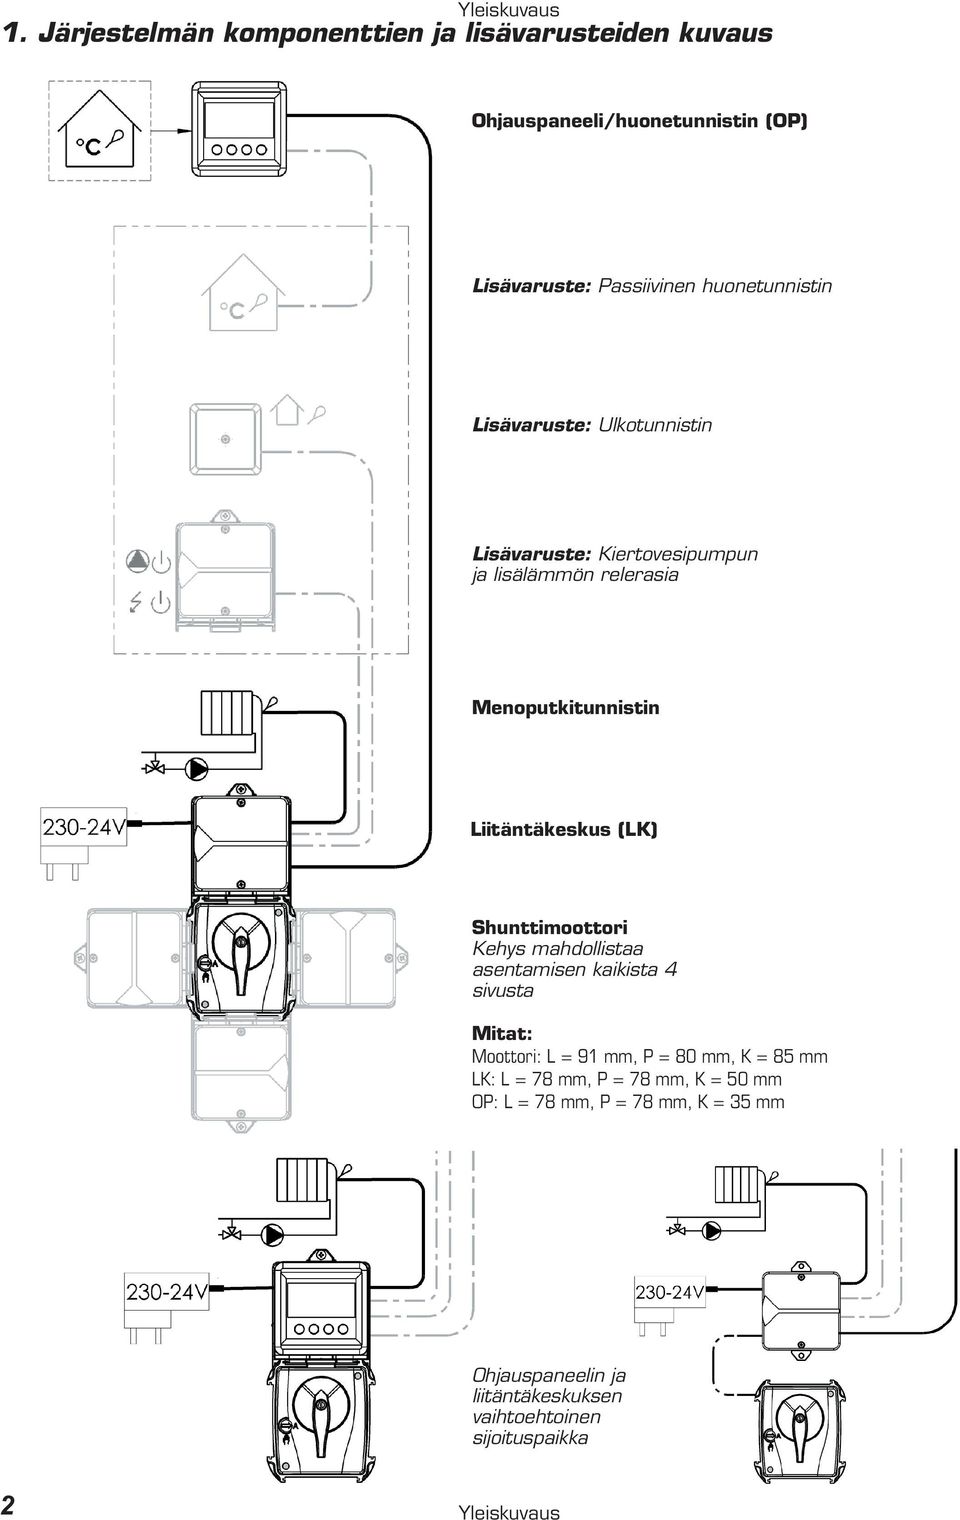 Lisävaruste: Ulkotunnistin Lisävaruste: Kiertovesipumpun ja lisälämmön relerasia Menoputkitunnistin Liitäntäkeskus (LK)